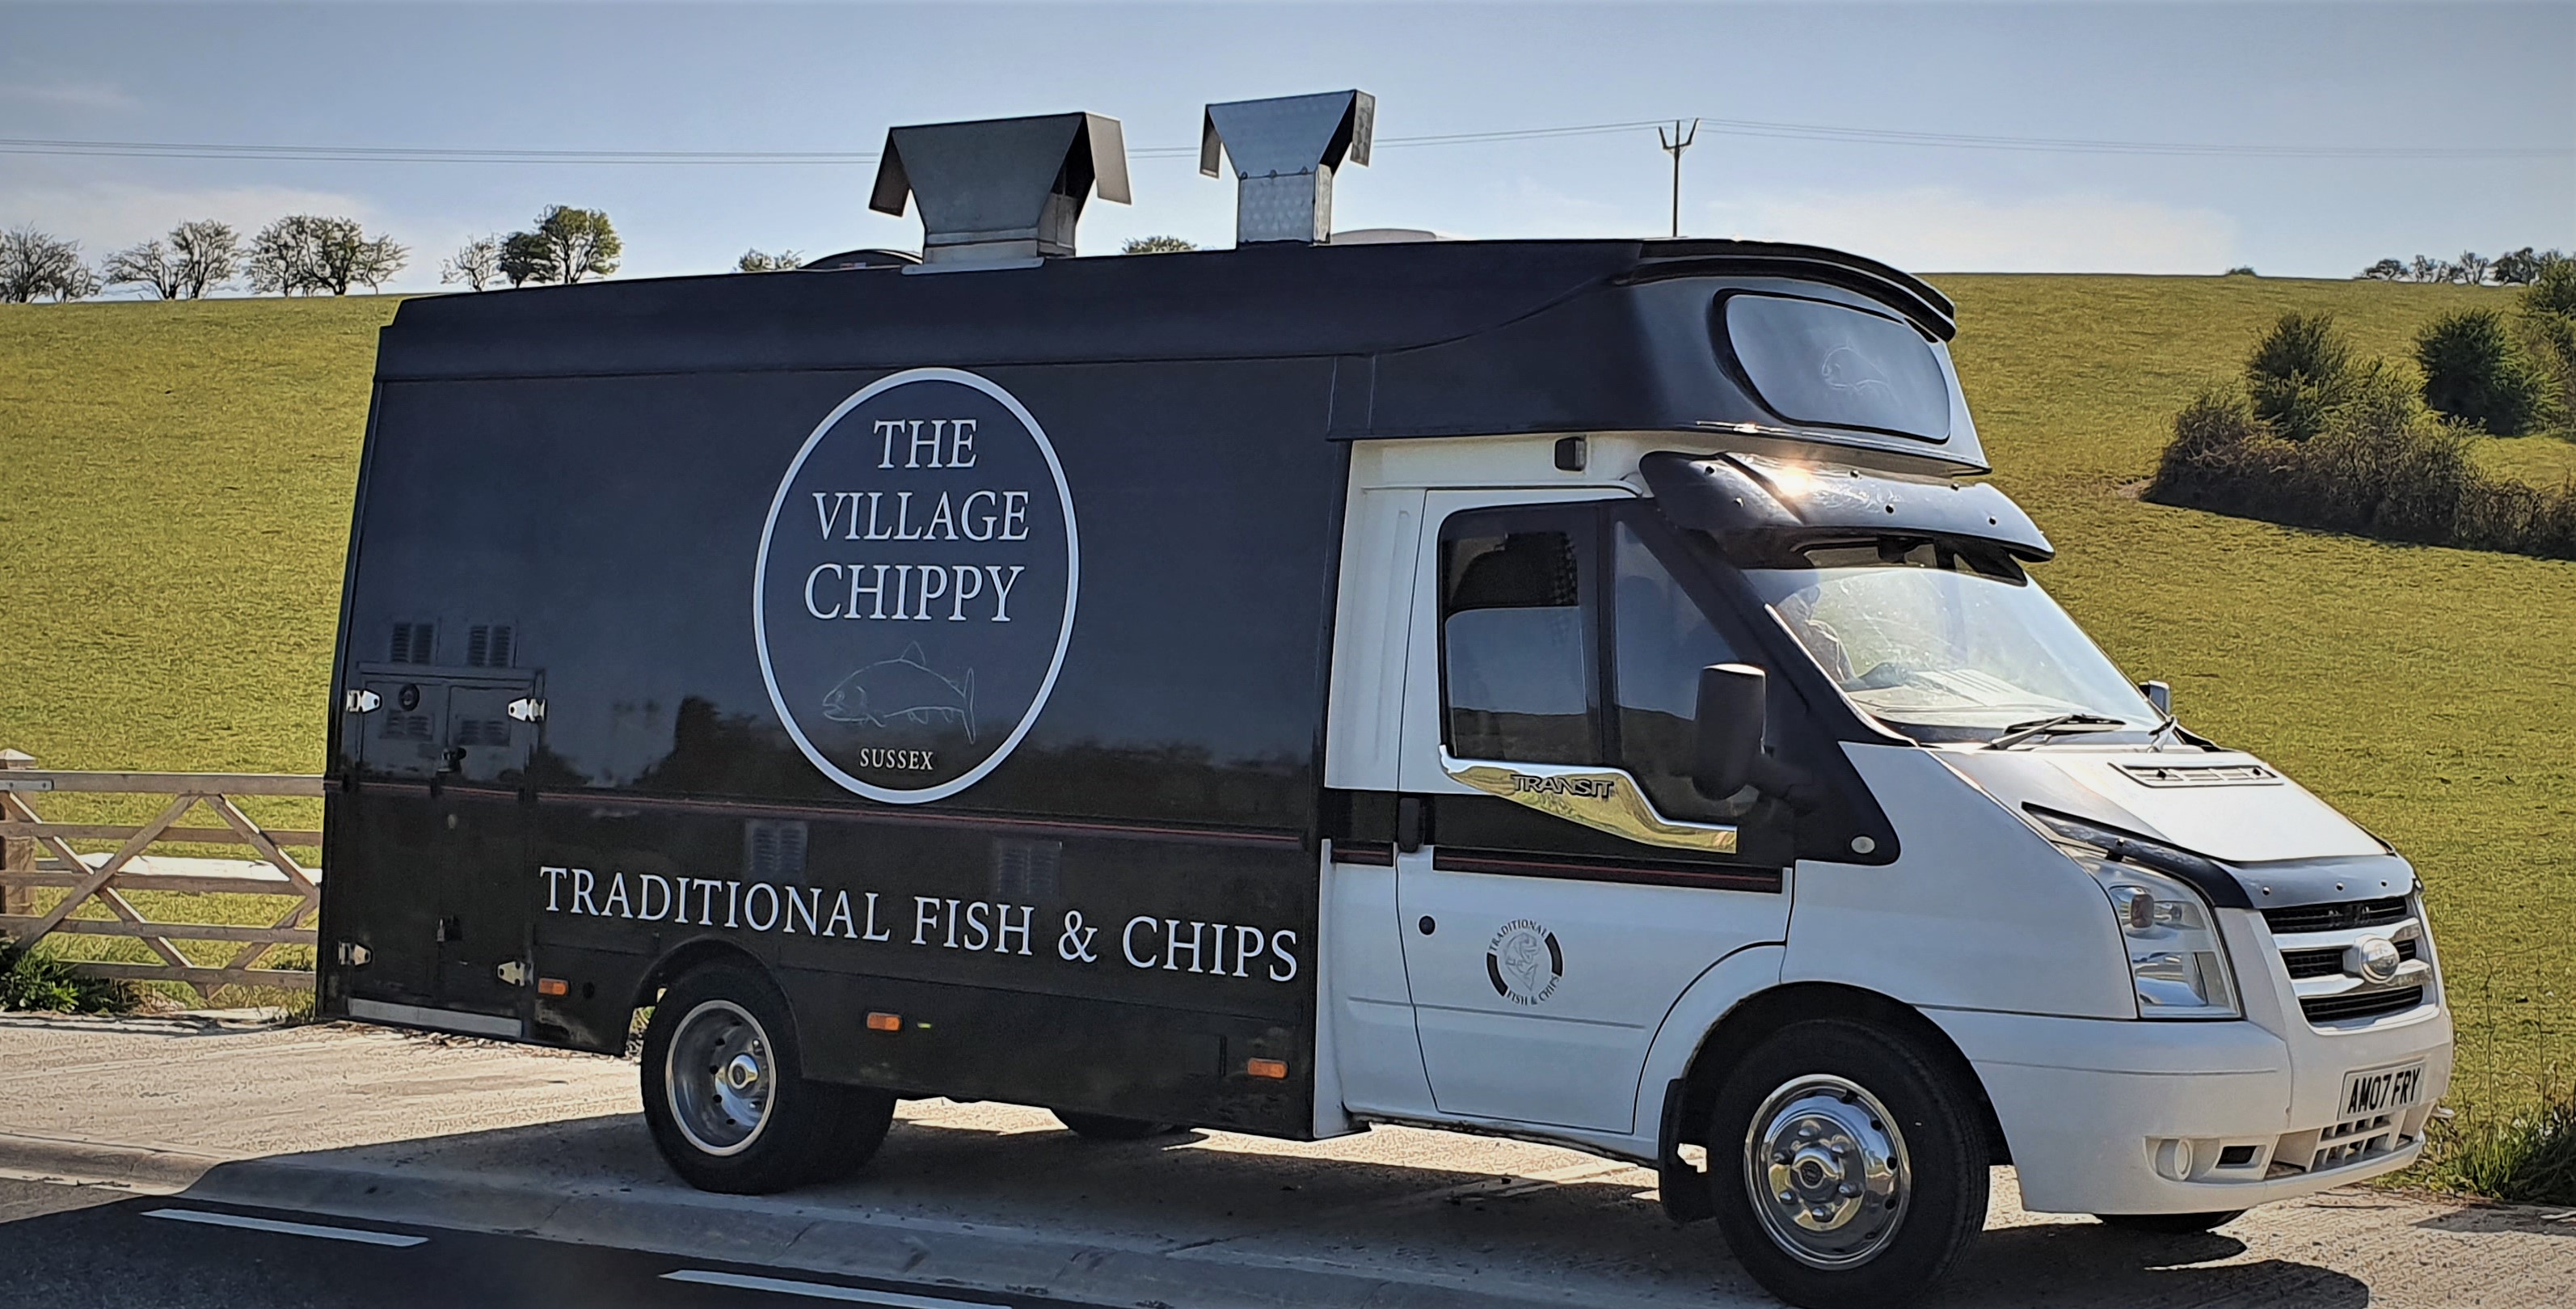 The Village Chippy van